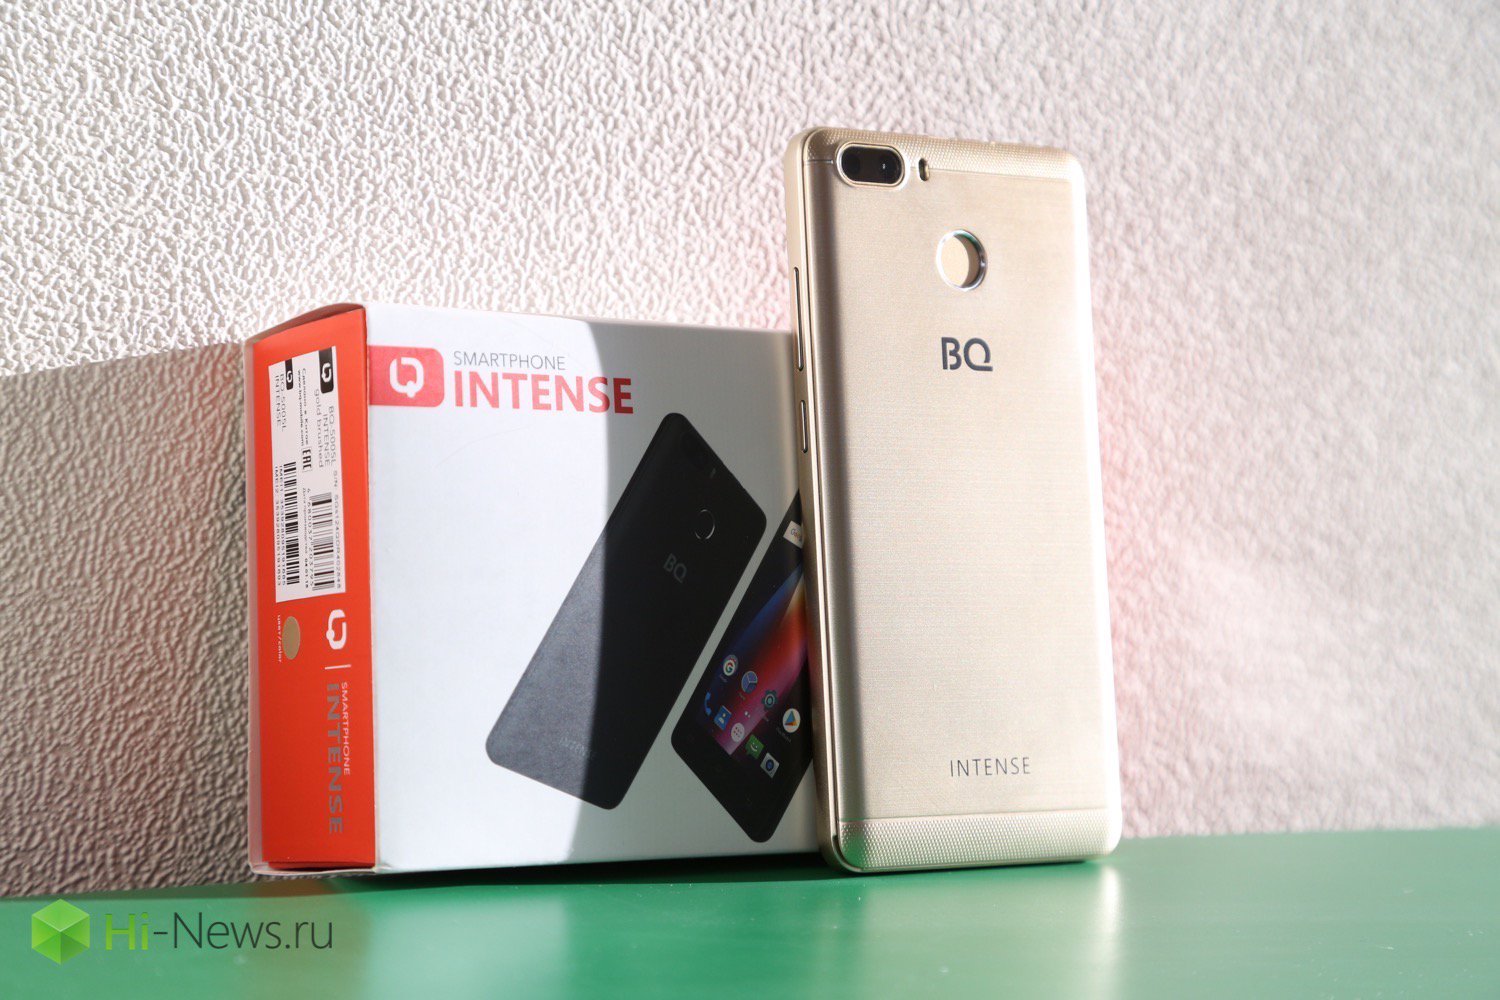 BQ Intense — microsurco smartphone de rusia